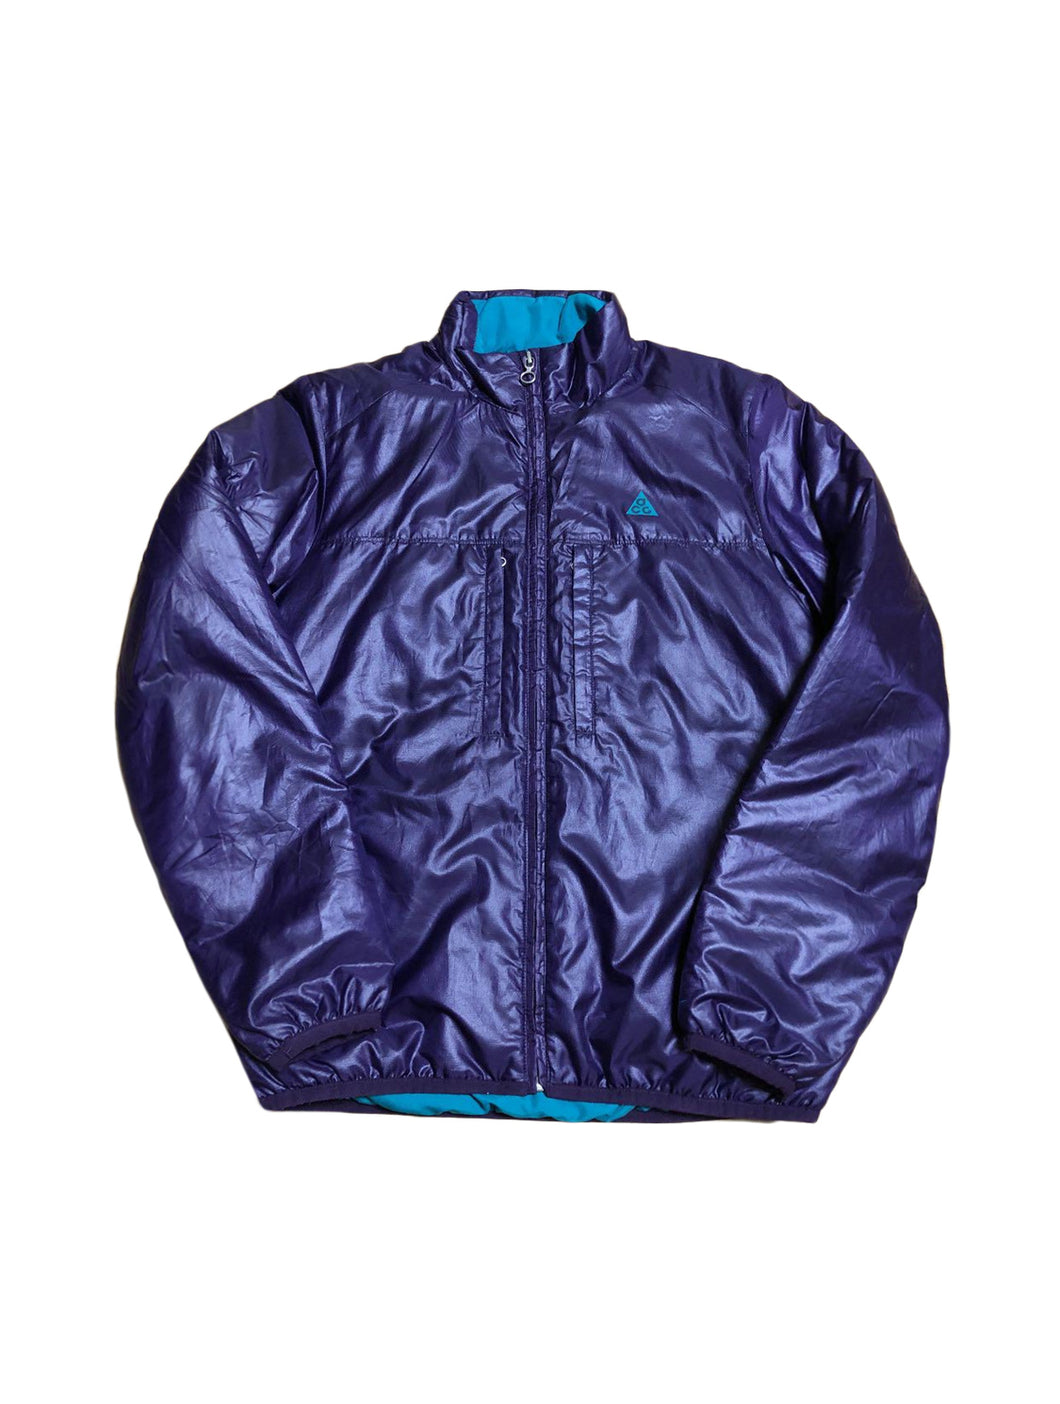 Nike ACG Bi-Color Nylon Blue Jacket